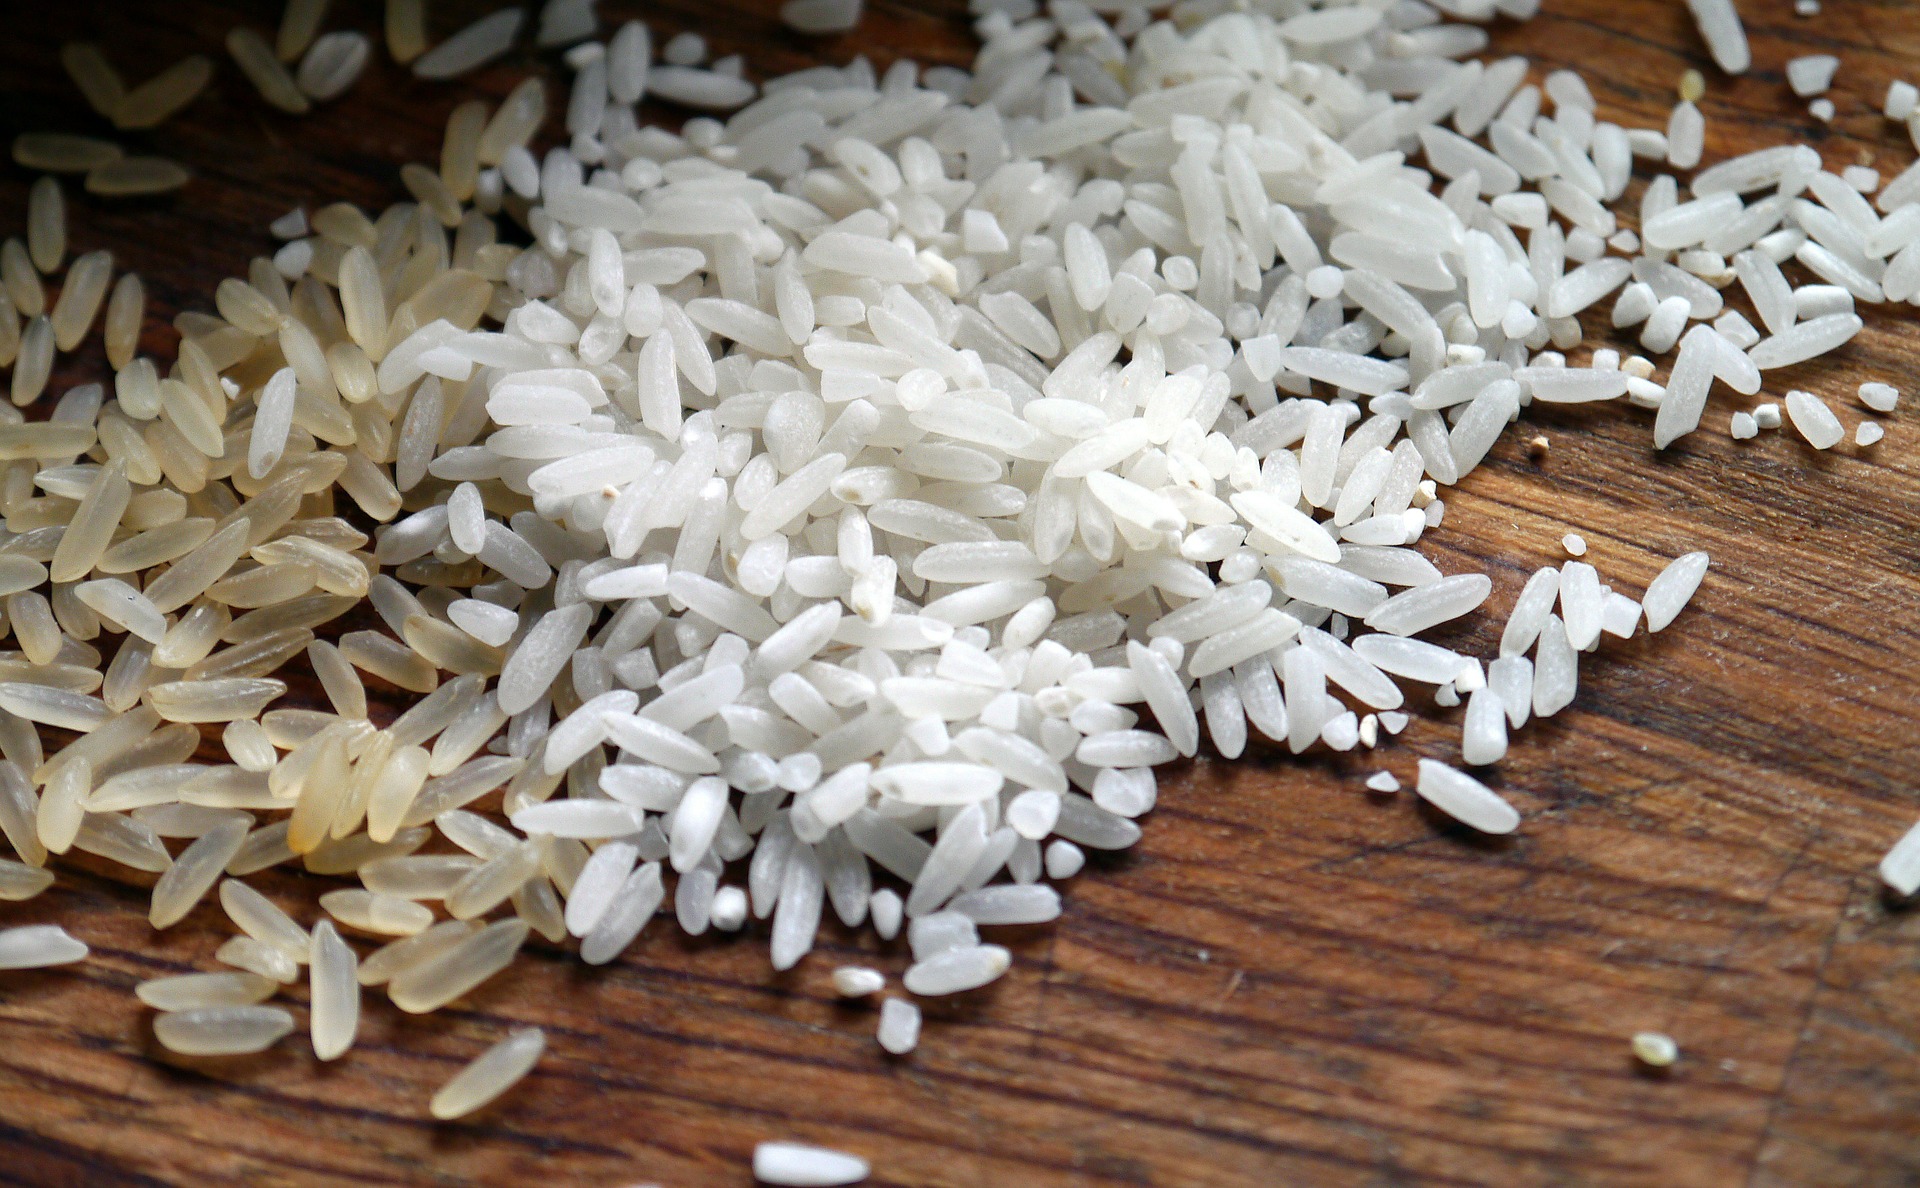 Plastová rýže z Asie se blíží. Podívejte se, jak ji rozpoznat.